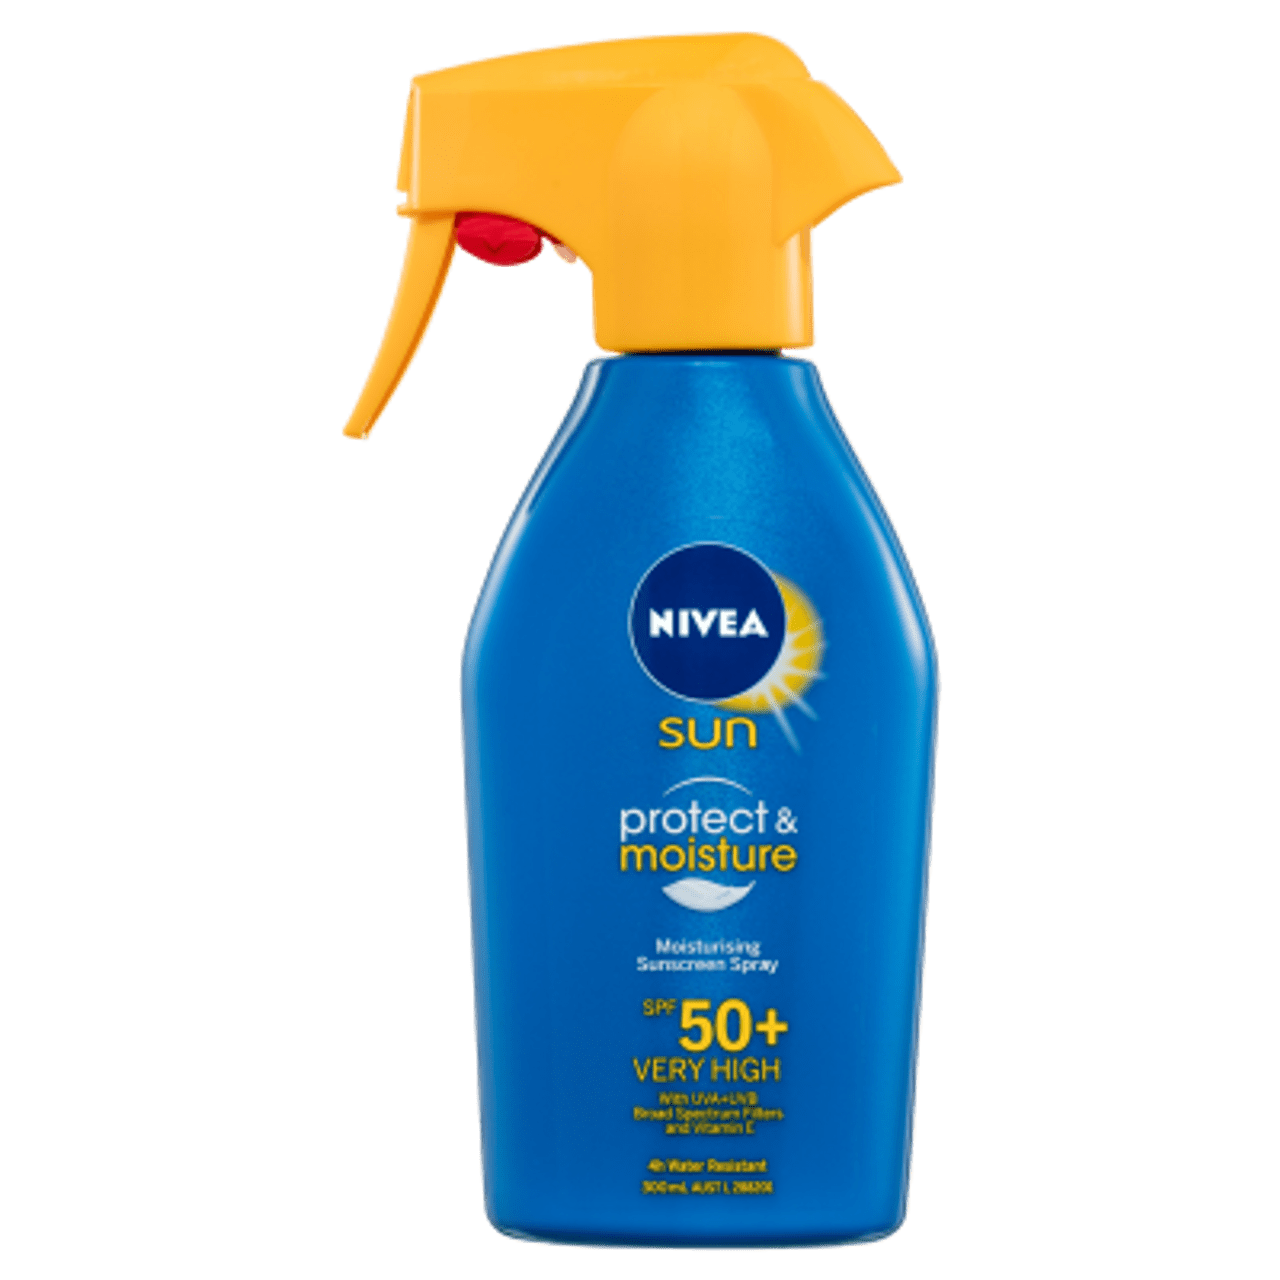 Sunscreen NIVEA SPF 50, Perlindungan Maksimal dari Sinar Matahari